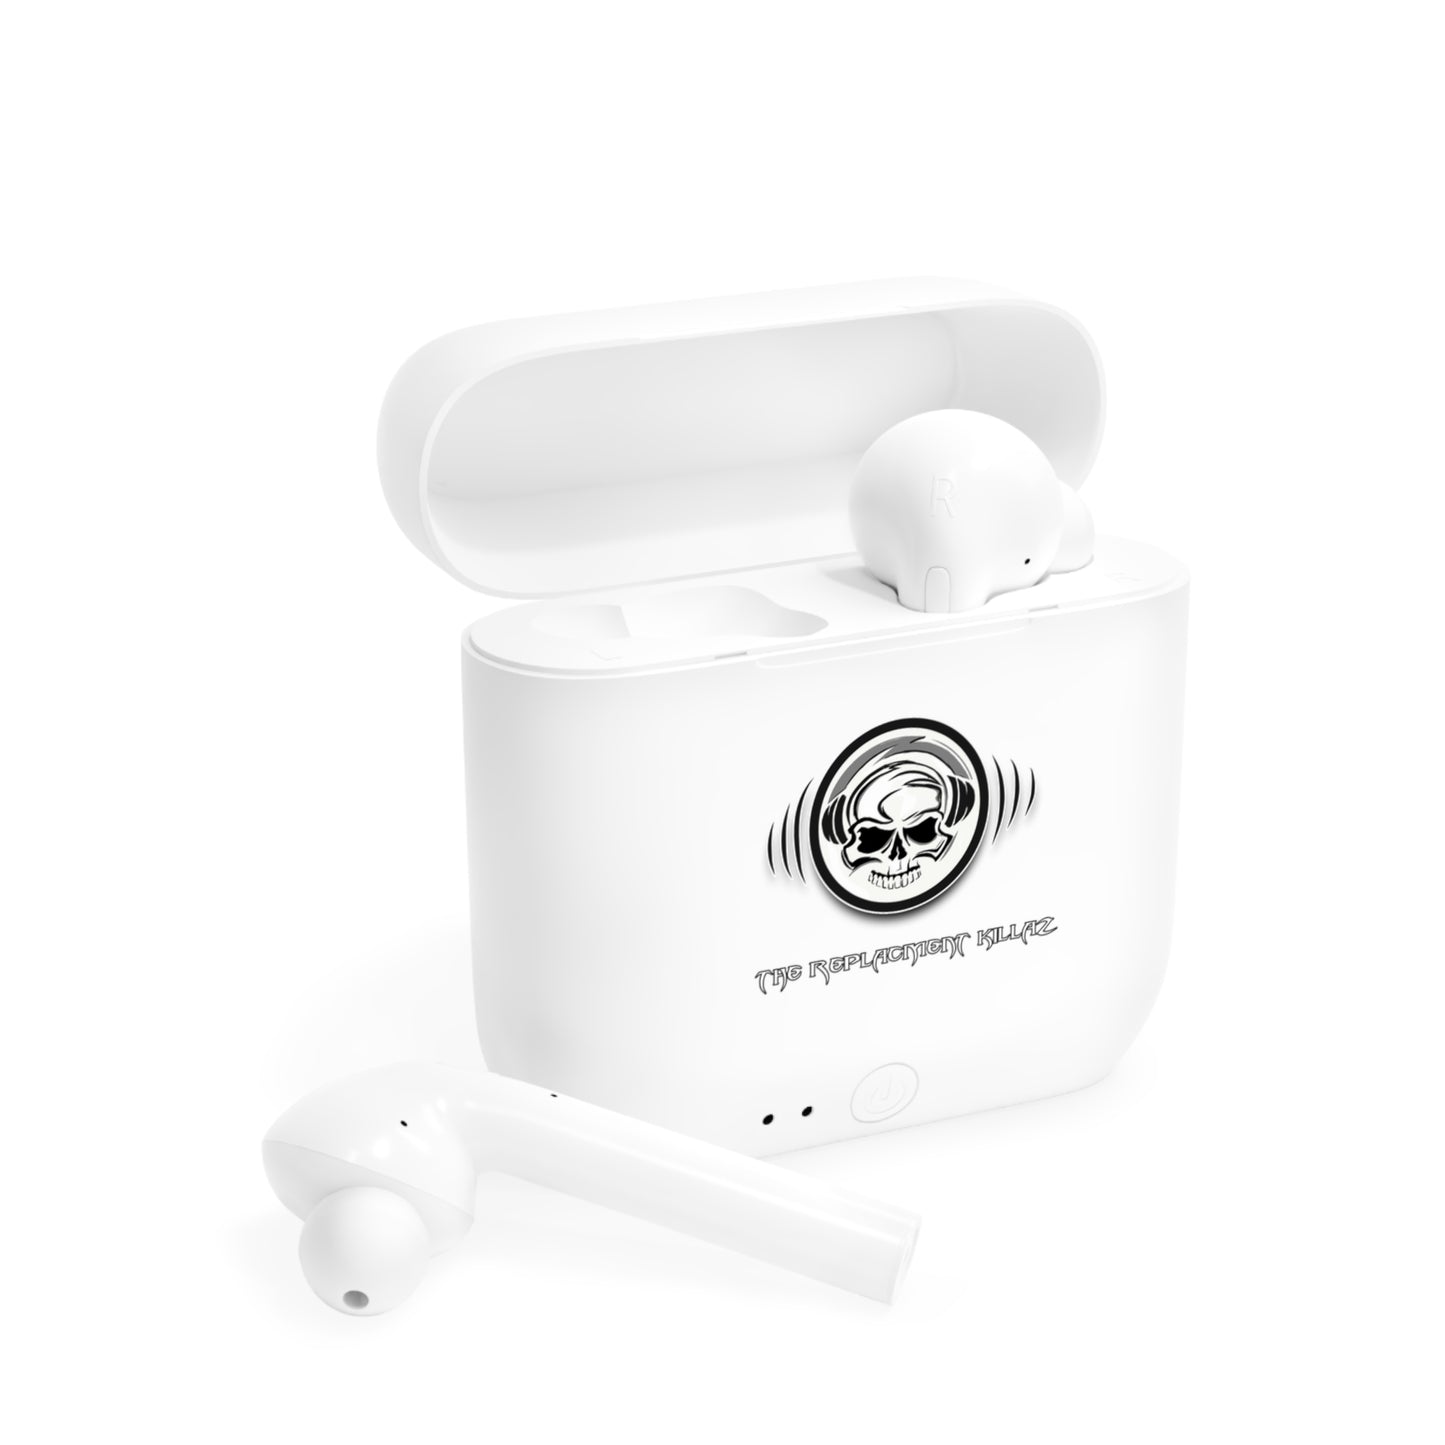 TRK Wireless Earbuds